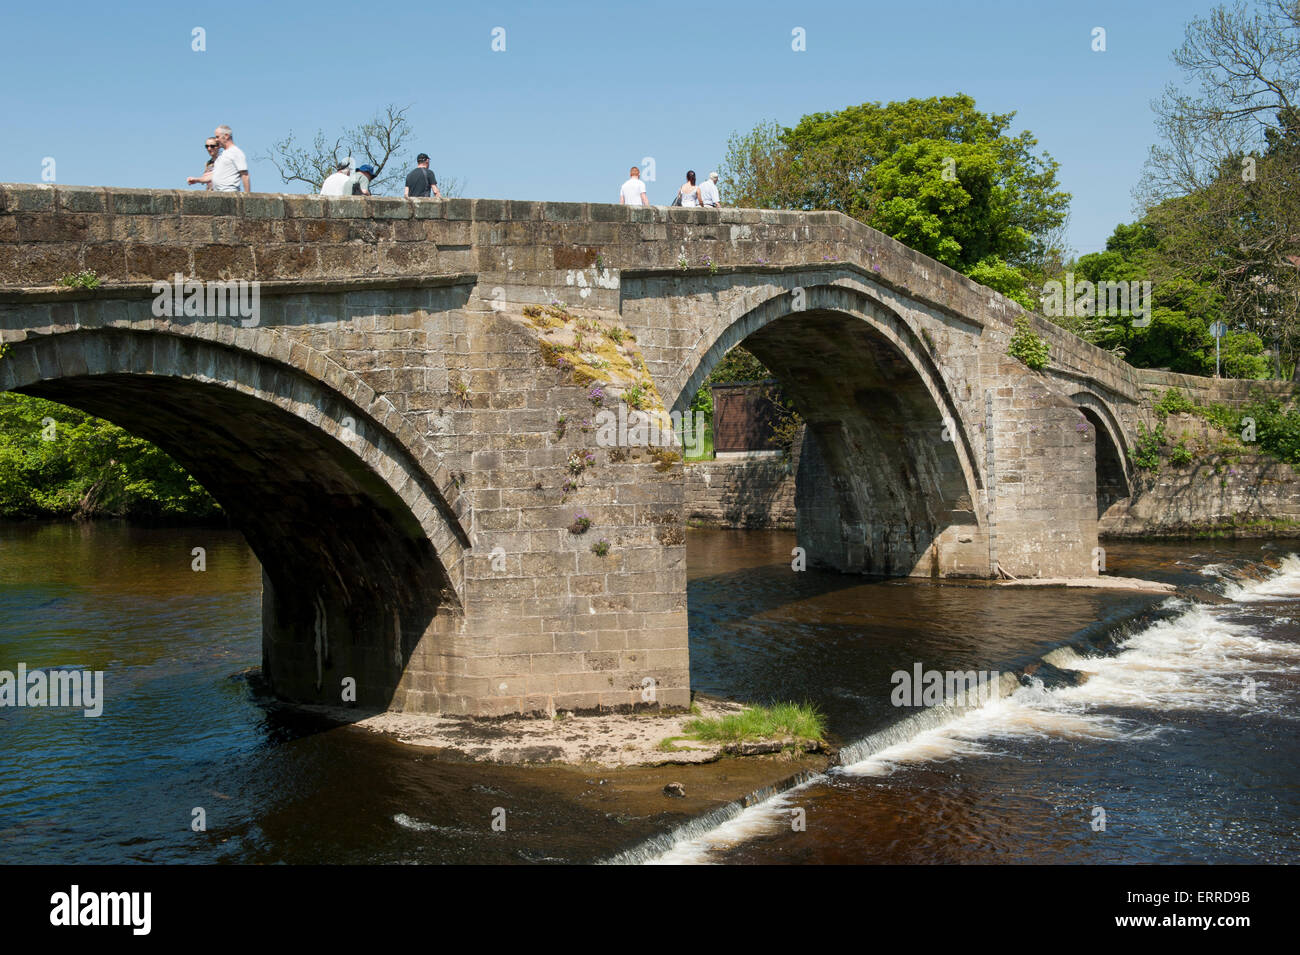 Les personnes qui traversent la rivière Wharfe panoramique sur le vieux pont de pierre sur l'eau mouvante packhorse & petit weir - Vieux Pont, Ilkley, West Yorkshire, Angleterre, Royaume-Uni. Banque D'Images